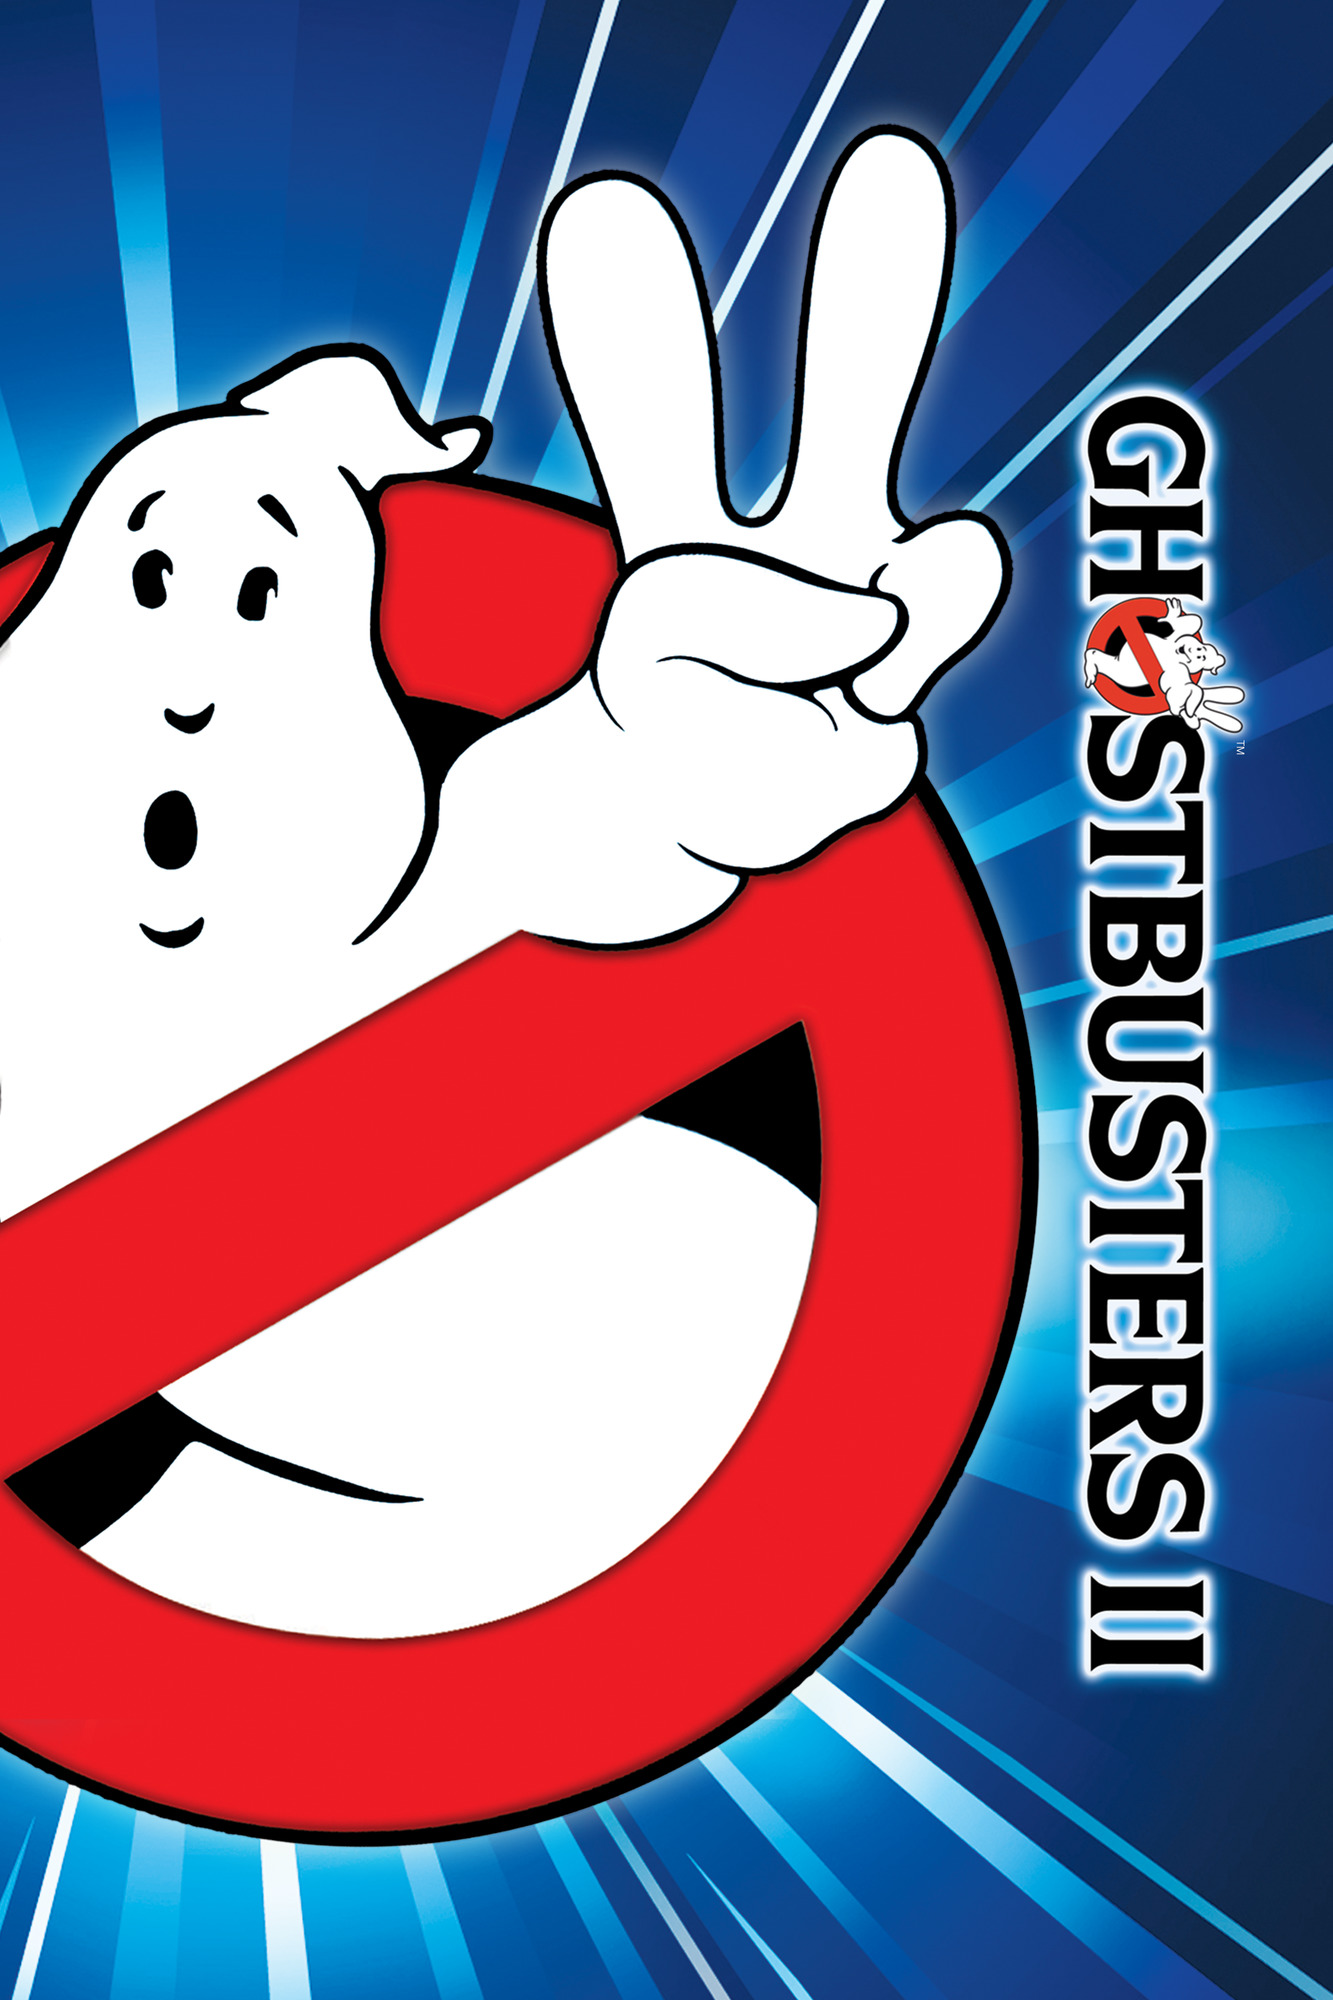 Ghostbusters 2 Artwork